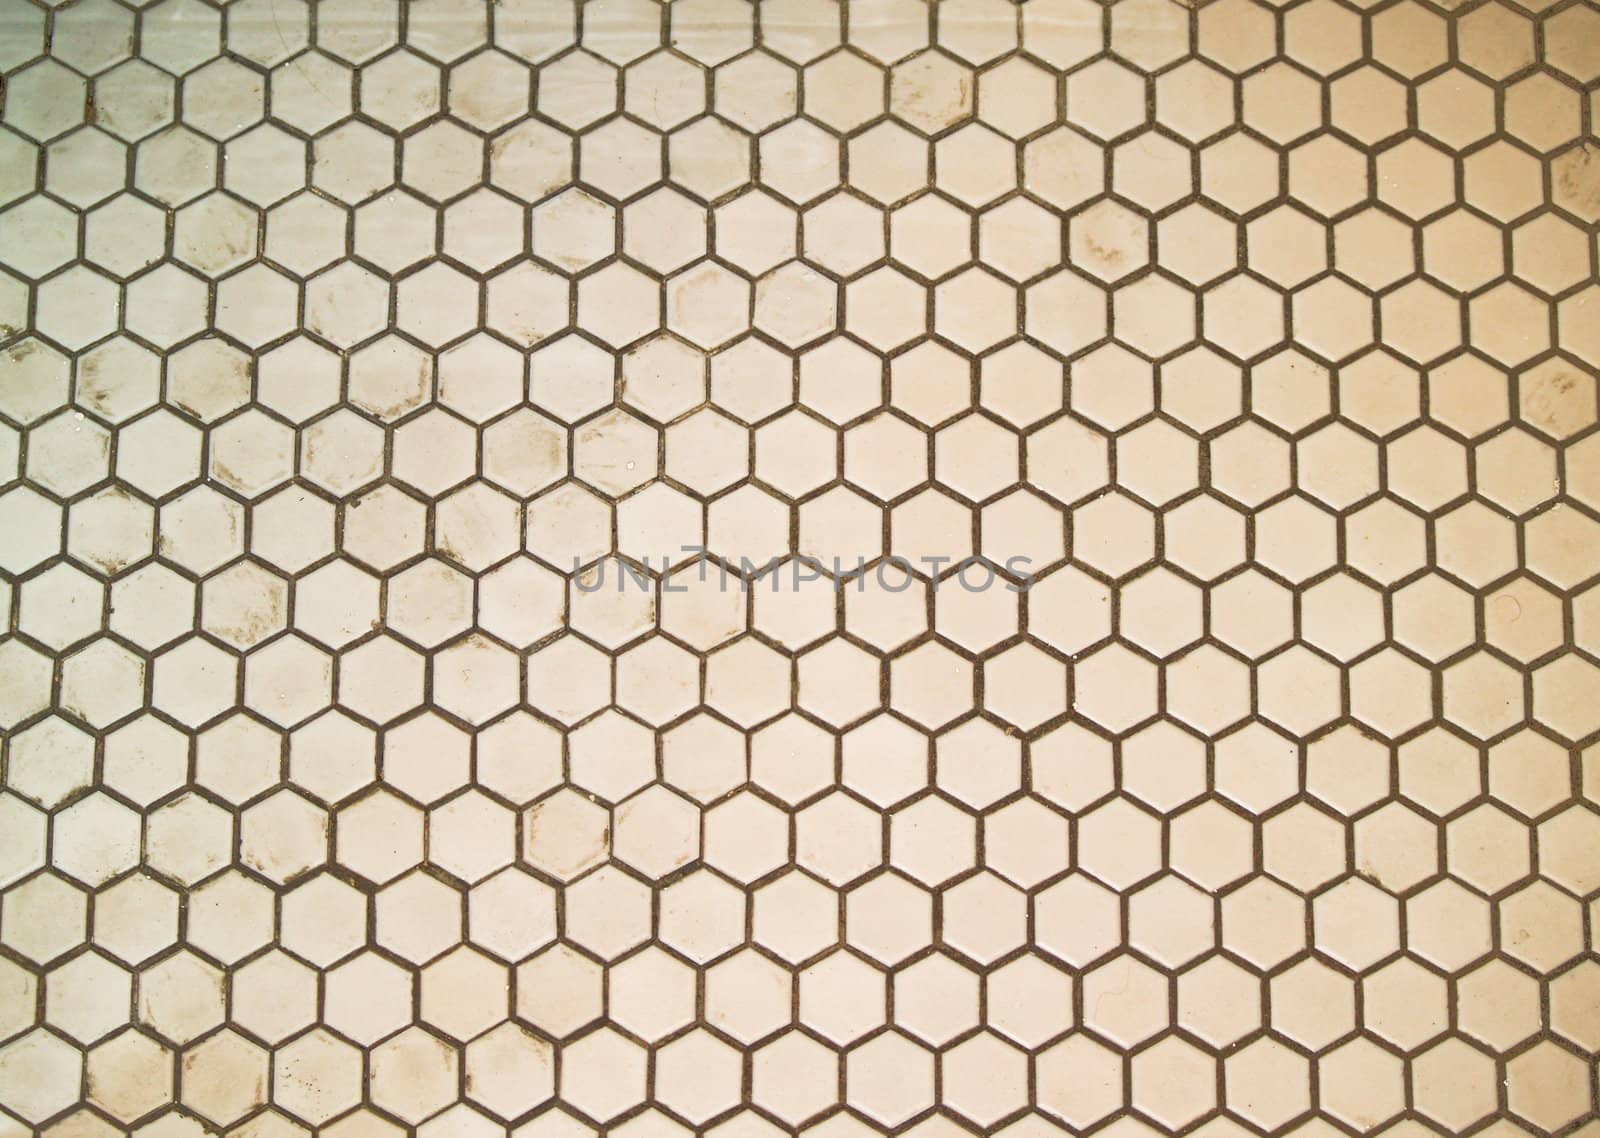 Filthy hexagon tiles